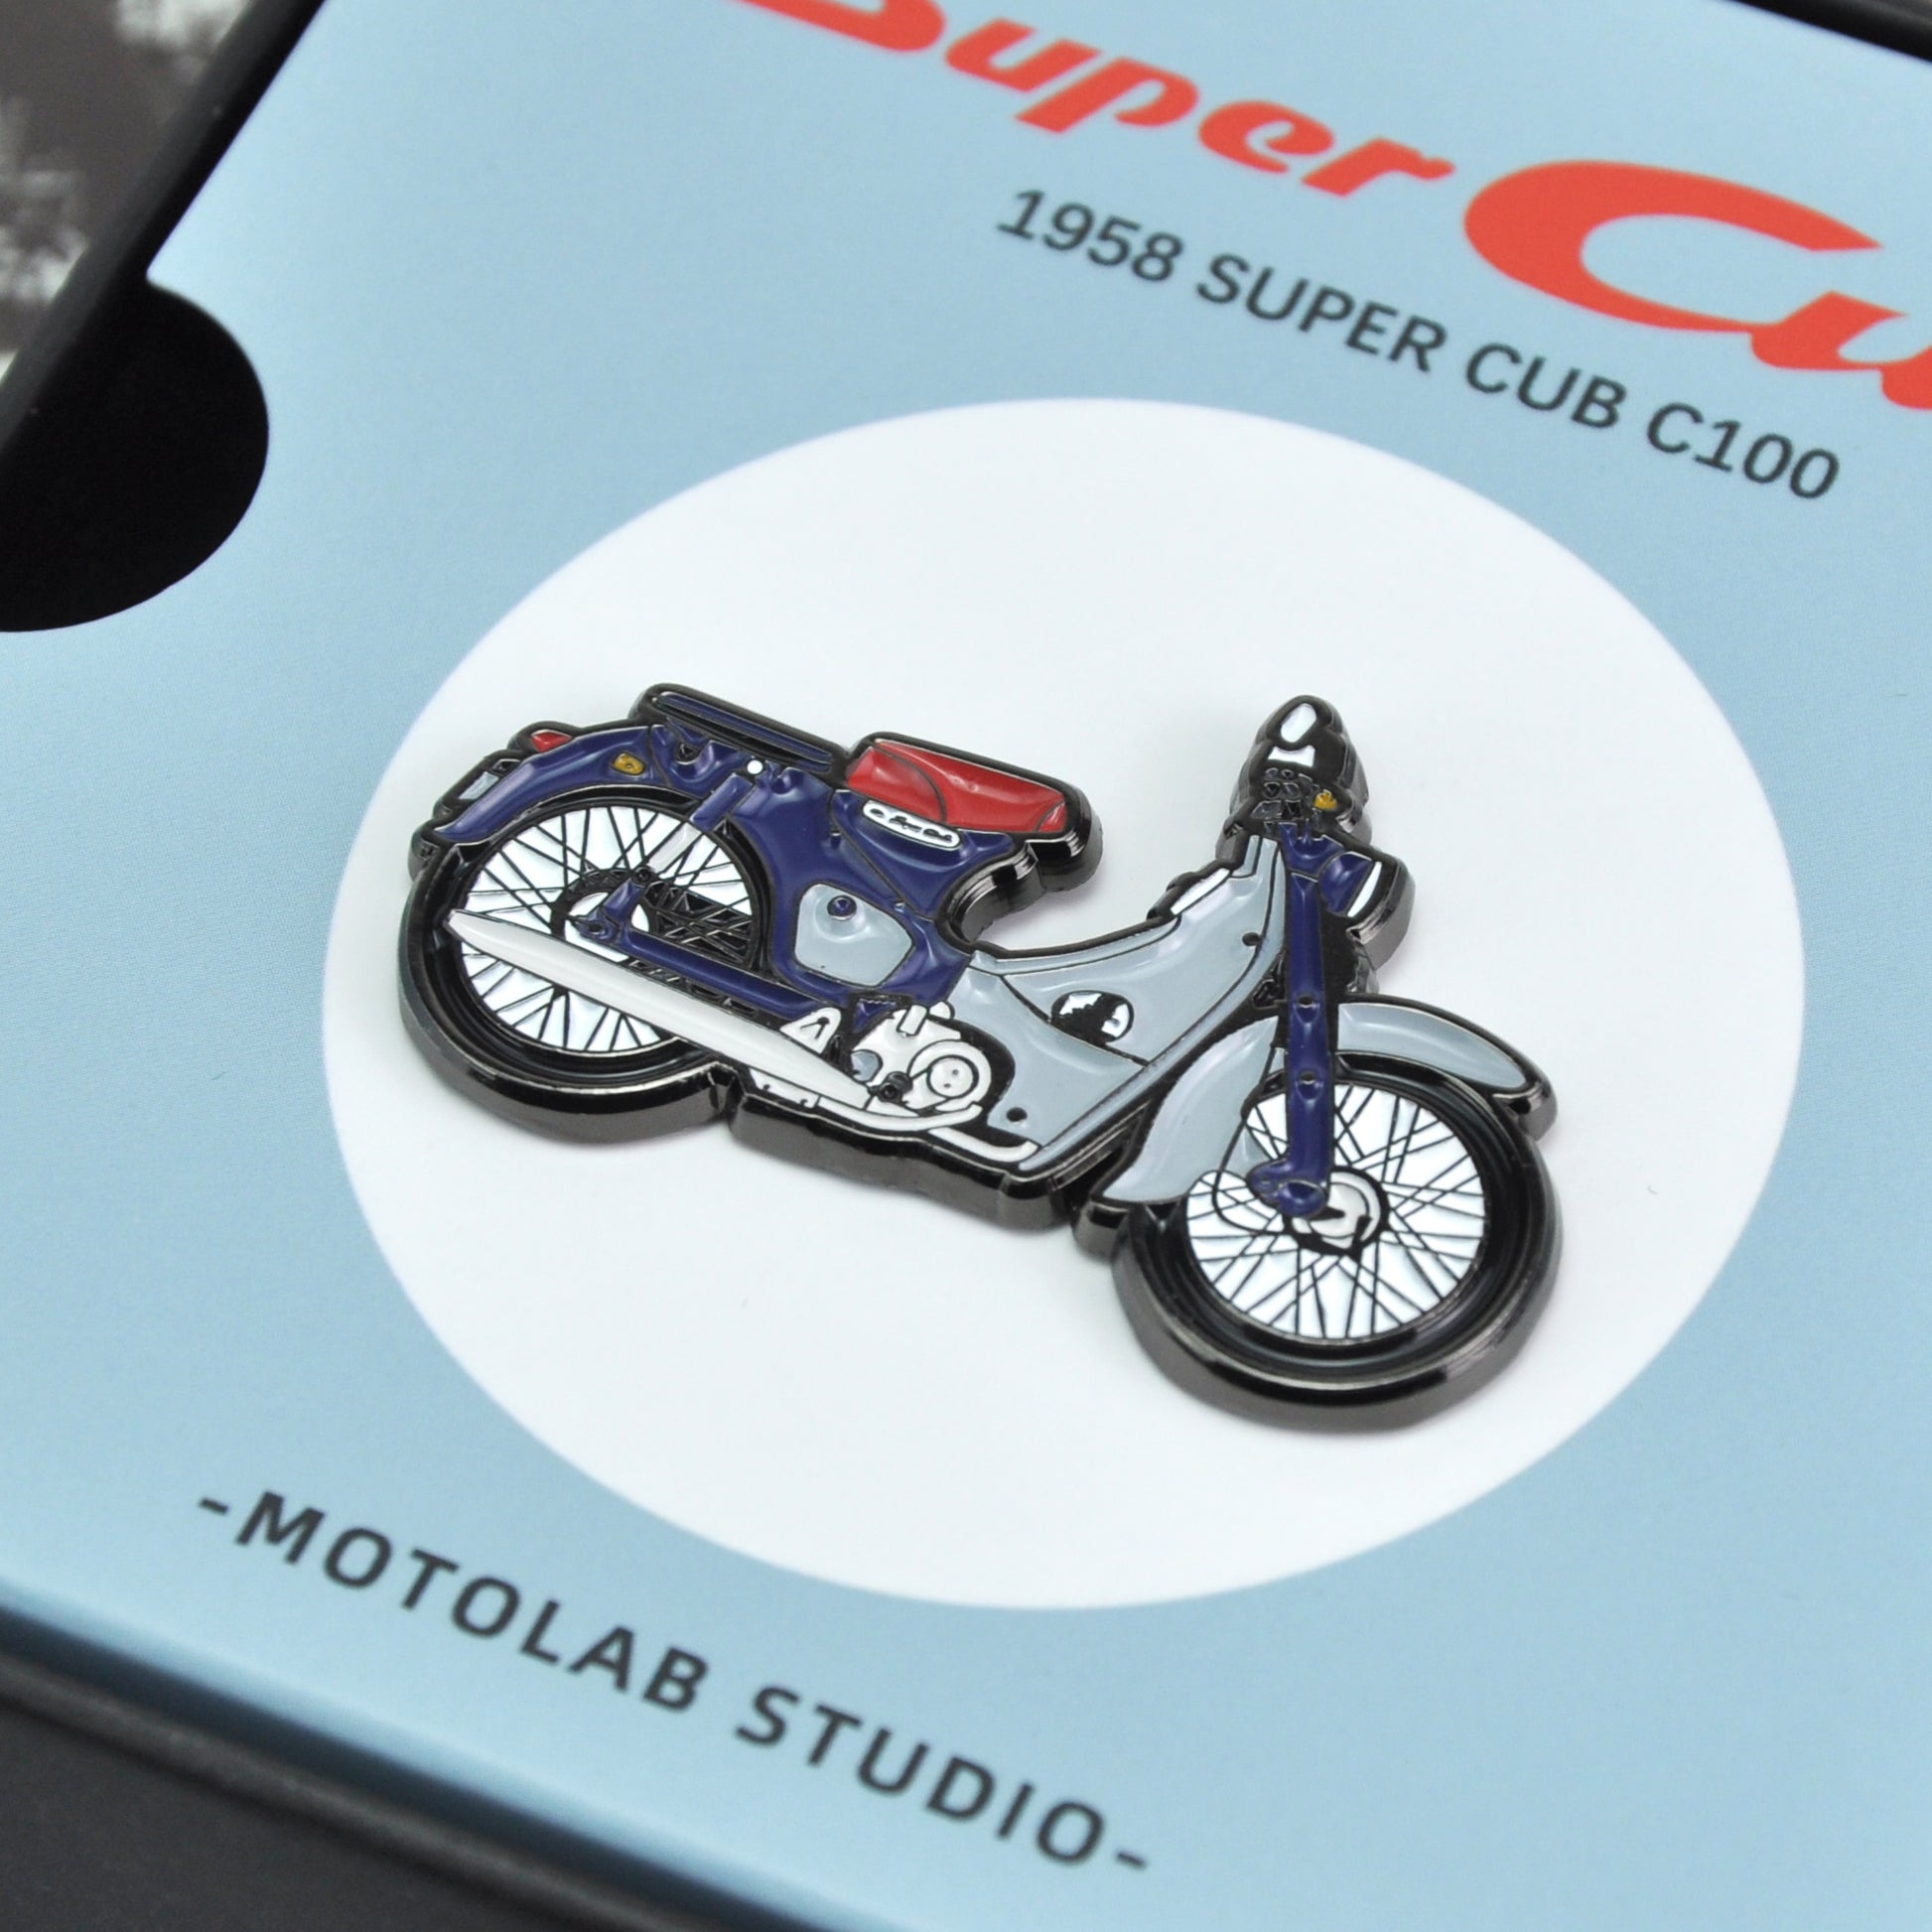 Honda-Super-Cub-Pin-Badge-gift-biker